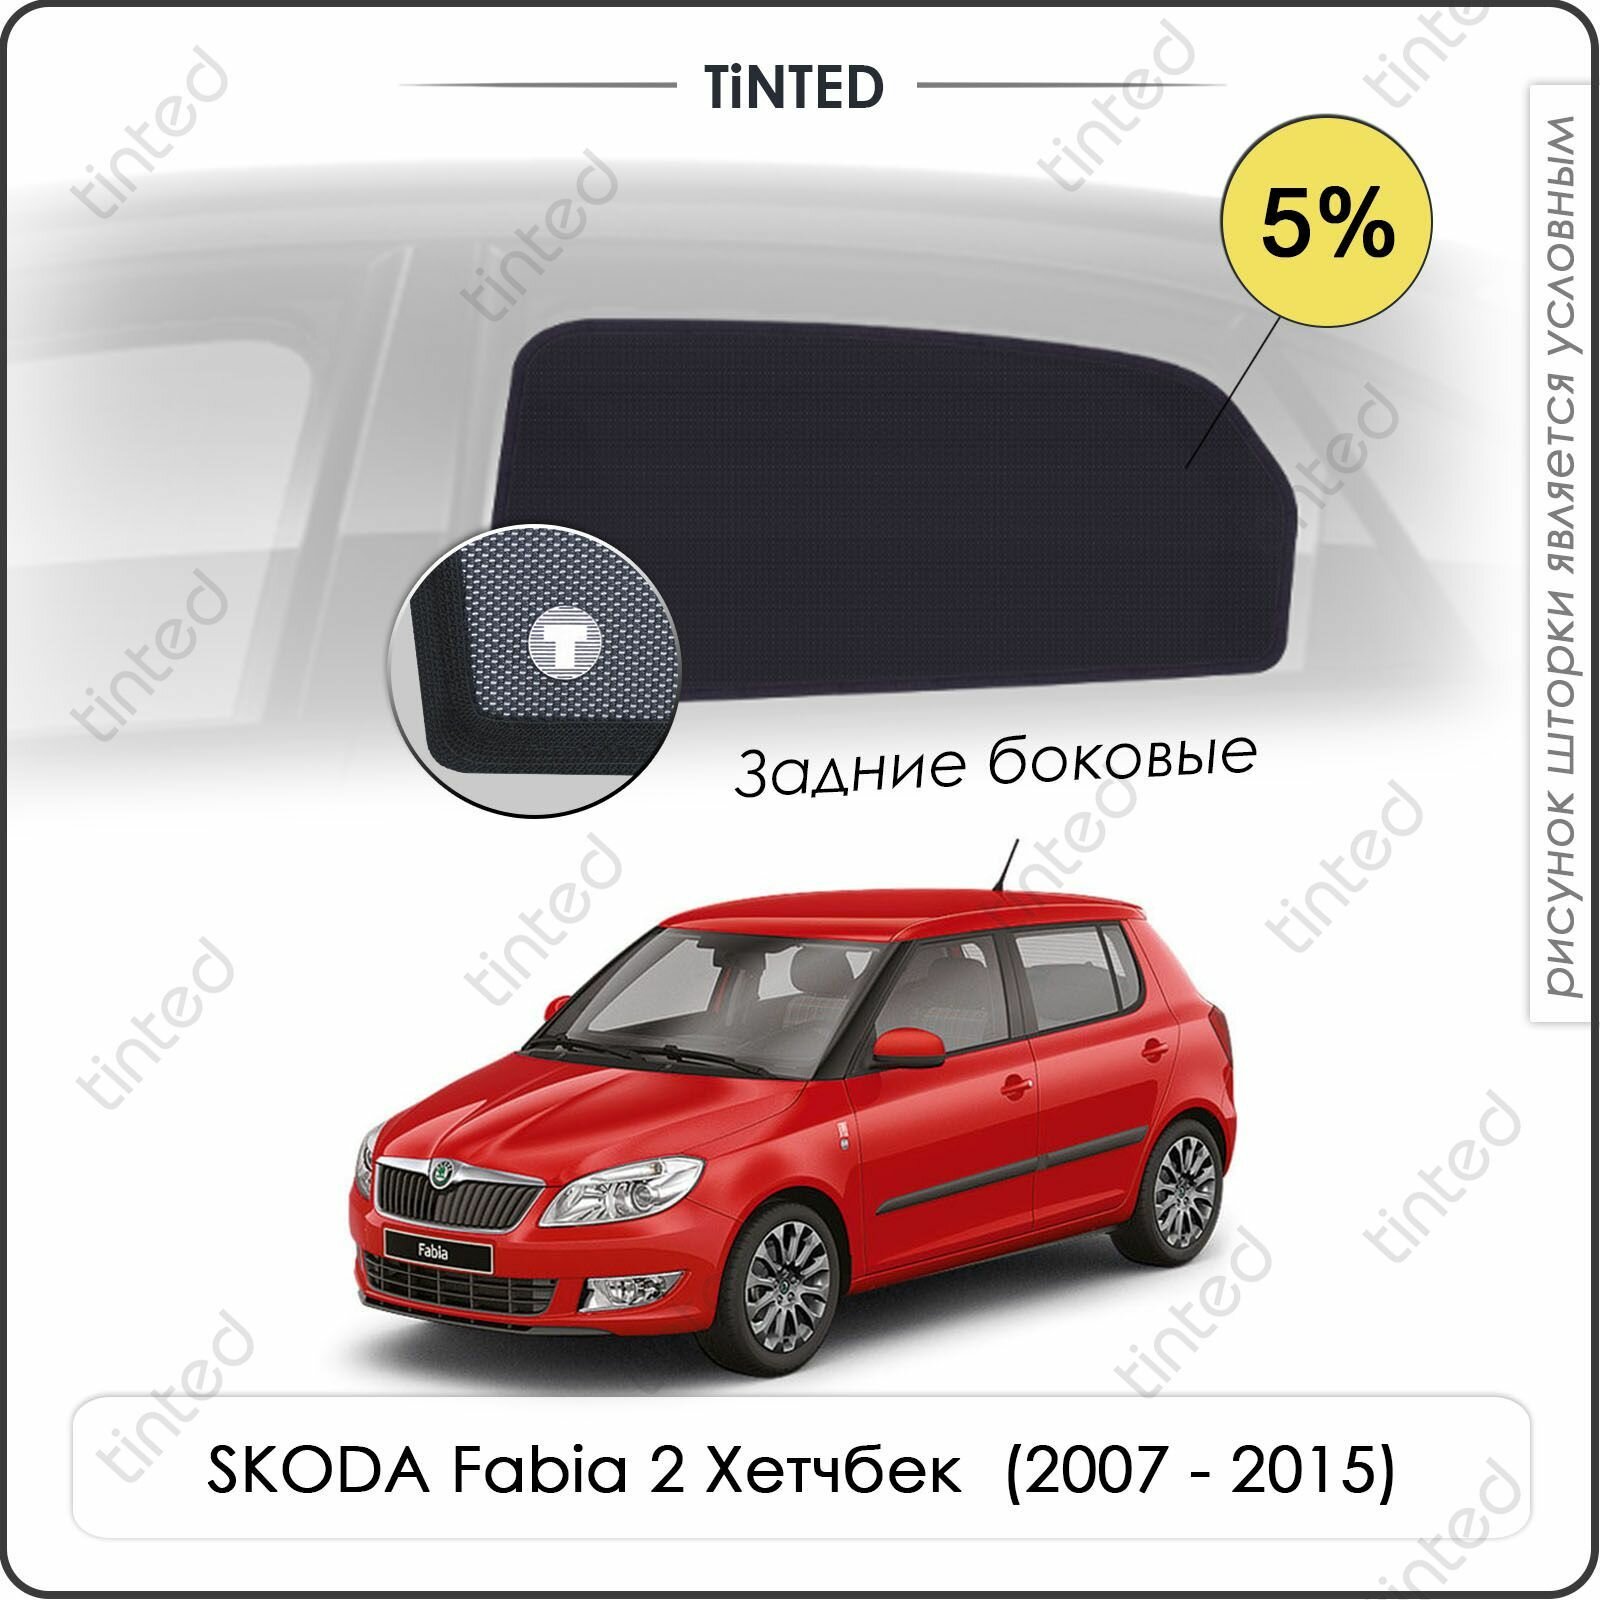 Шторки на автомобиль солнцезащитные SKODA Fabia 2 Хетчбек 5дв. (2007 - 2015) на задние двери 5%, сетки от солнца в машину шкода фабия, Каркасные автошторки Premium